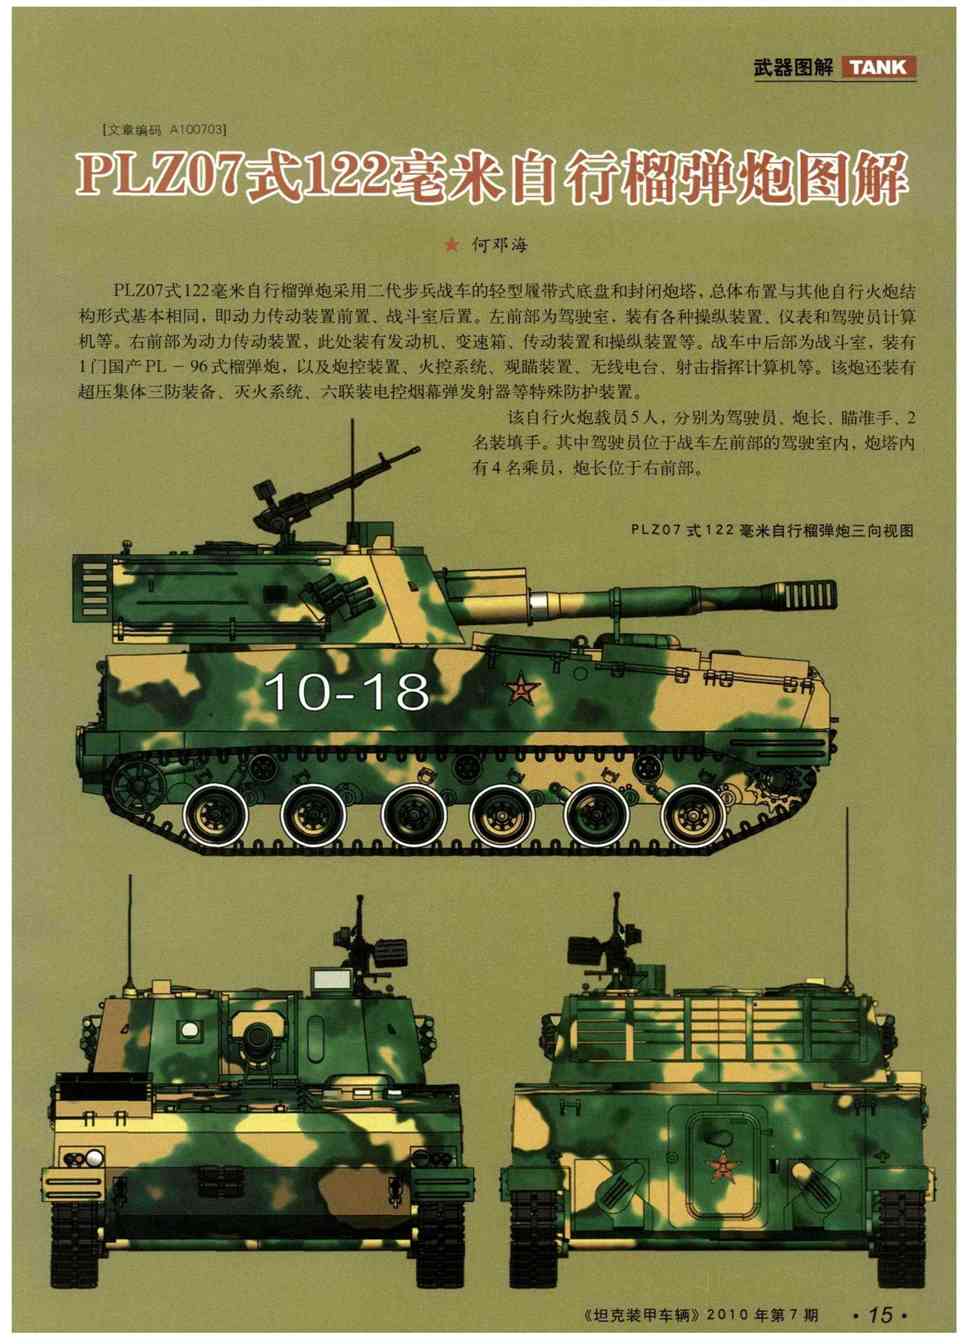 期刊中国plz07式122毫米自行榴弹炮图解   plz07式122毫米自行榴弹 